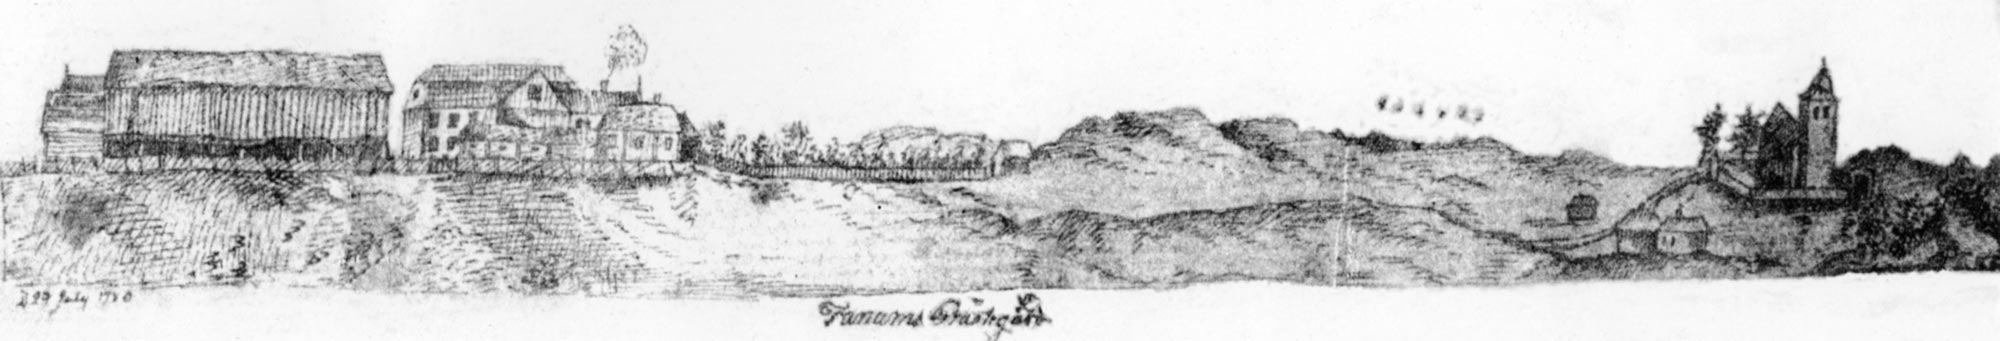 Tanums prästgård och kyrka år 1780, etsning av J N Brunius.